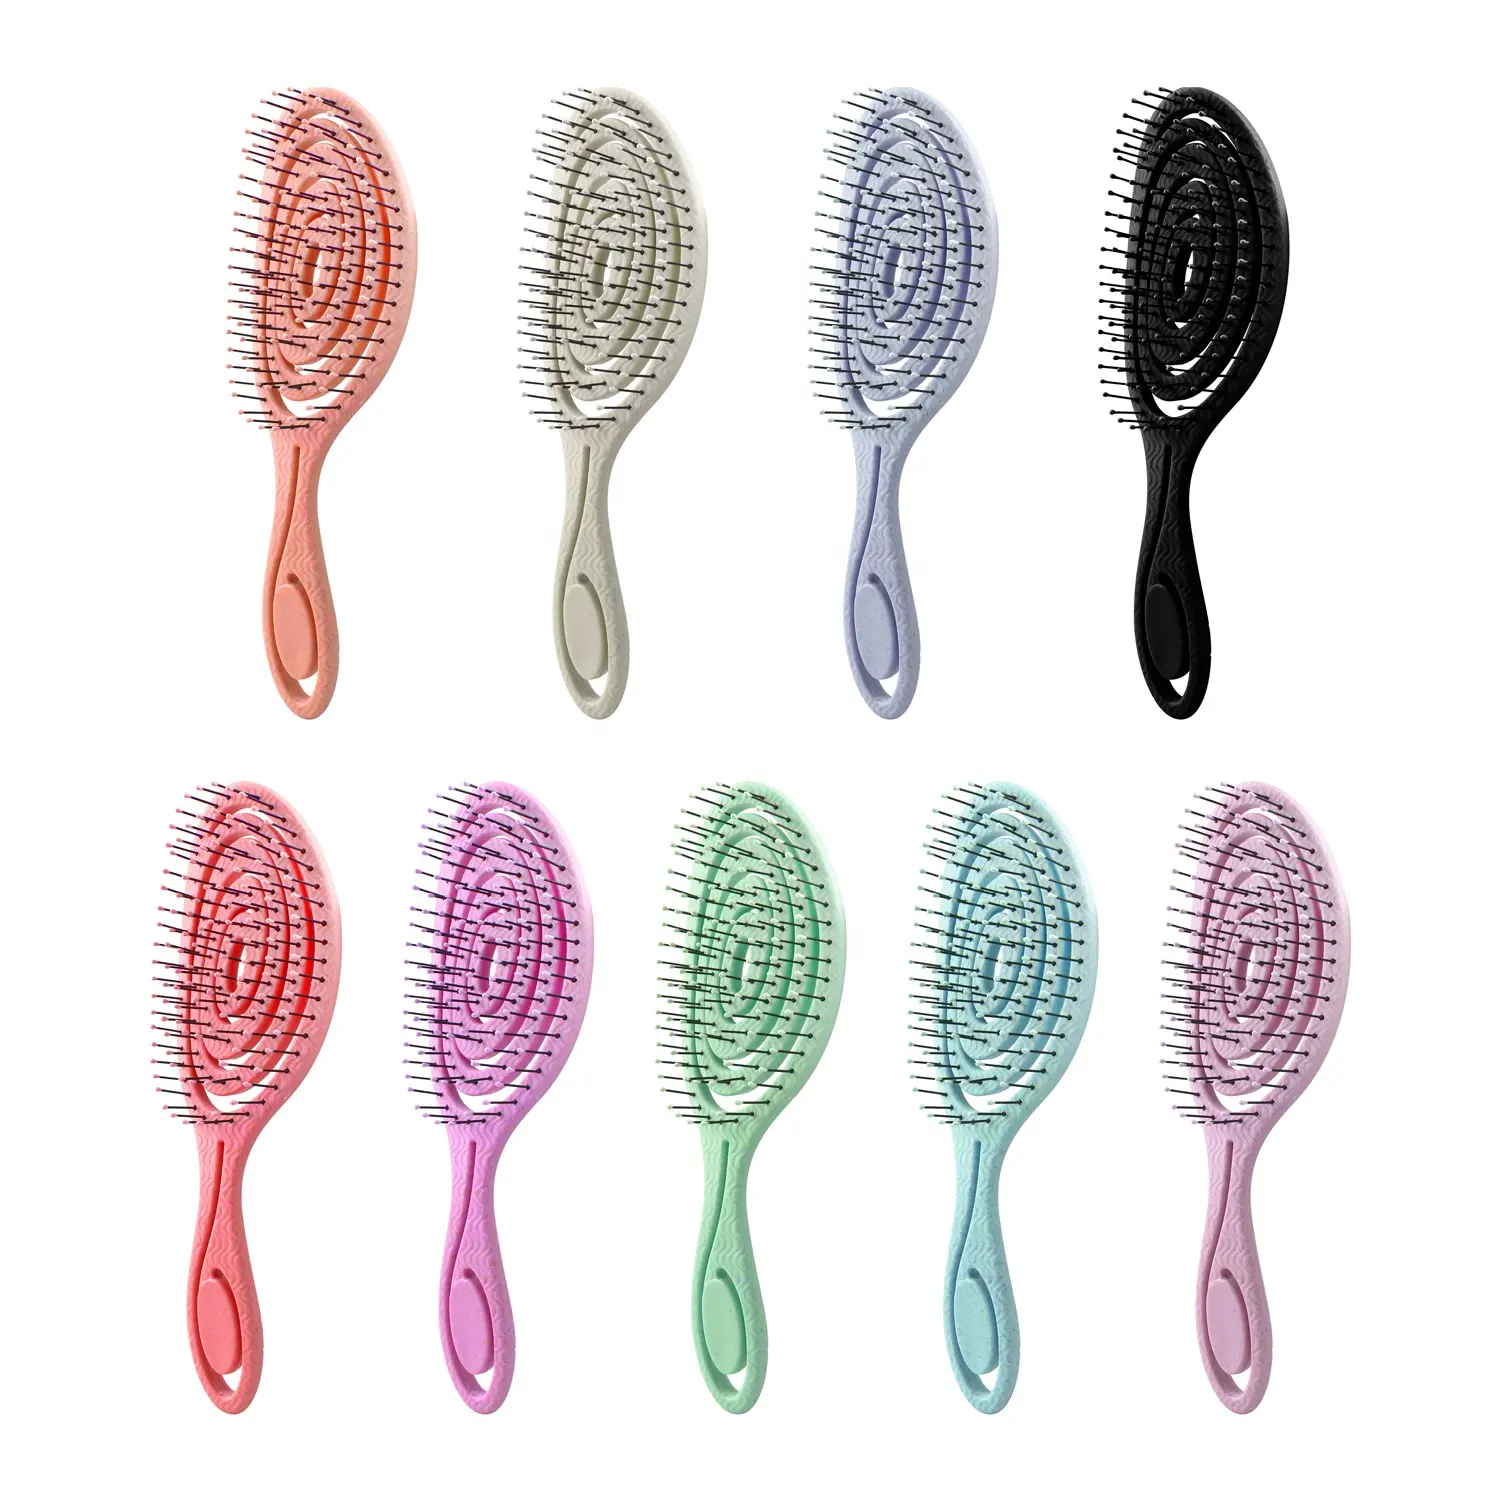 Unique Spiral Hairbrush For Women Bio-Friendly Detangler Ultra-soft Bristles For Curly Wet Hair Organic Detangling Hair Brush